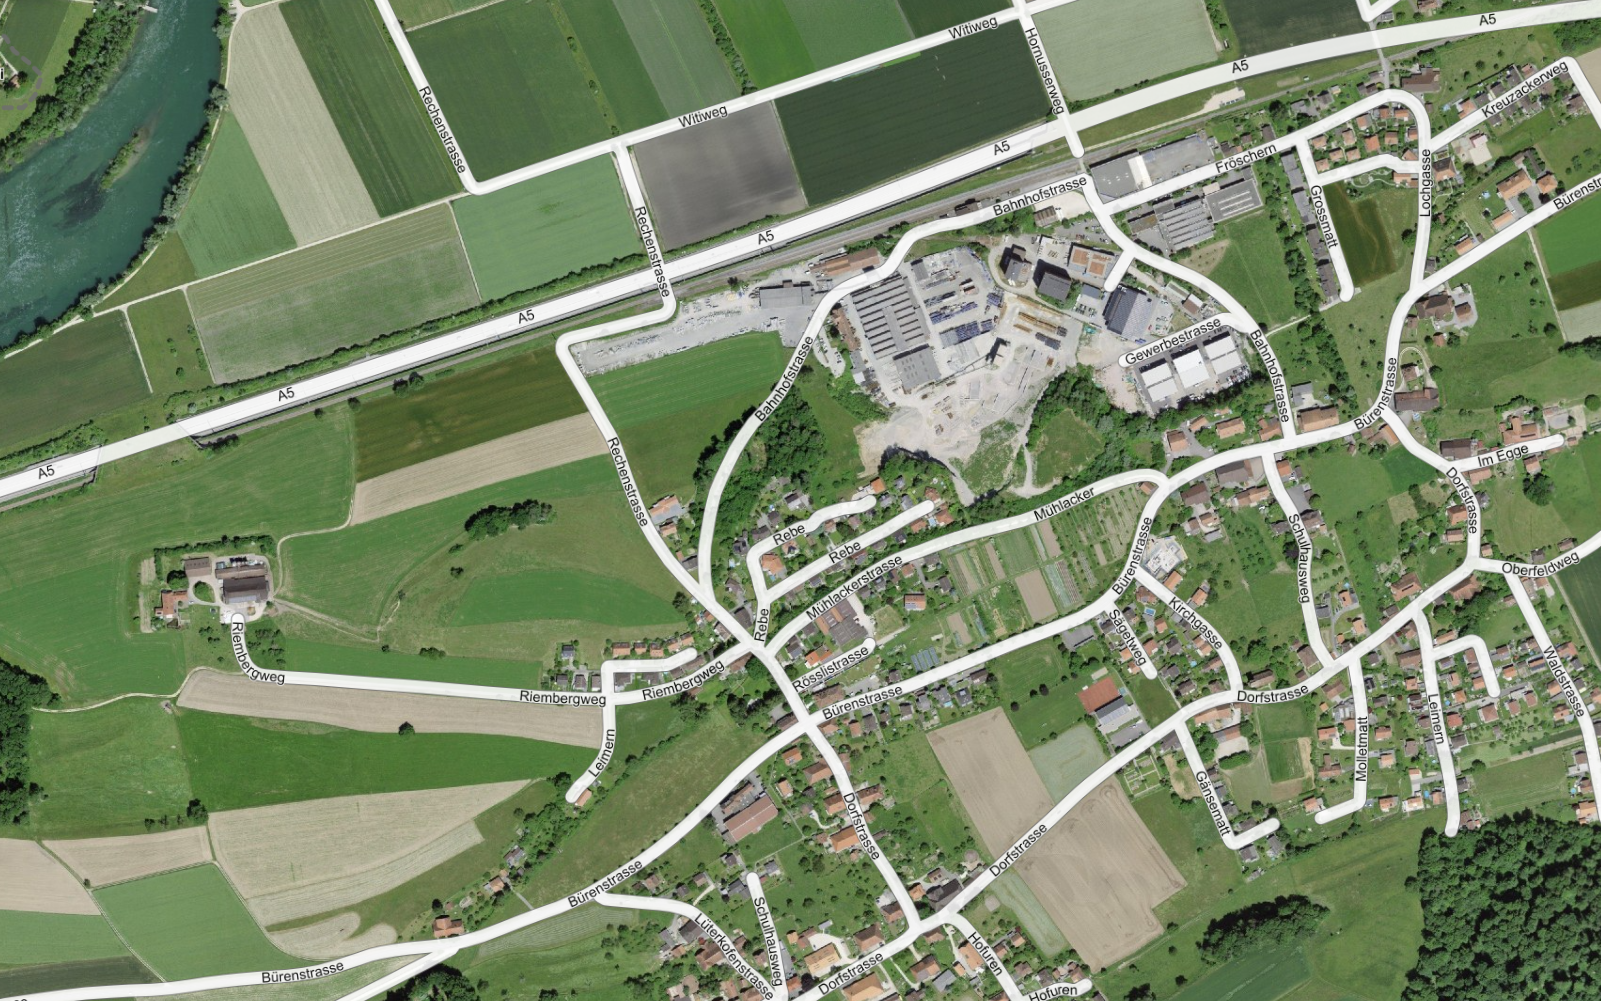 Das Bild zeigt eine Luftaufnahme von Nennigkofen (SO), mit den zugehörigen Strassennamen des amtlichen Verzeichnis.